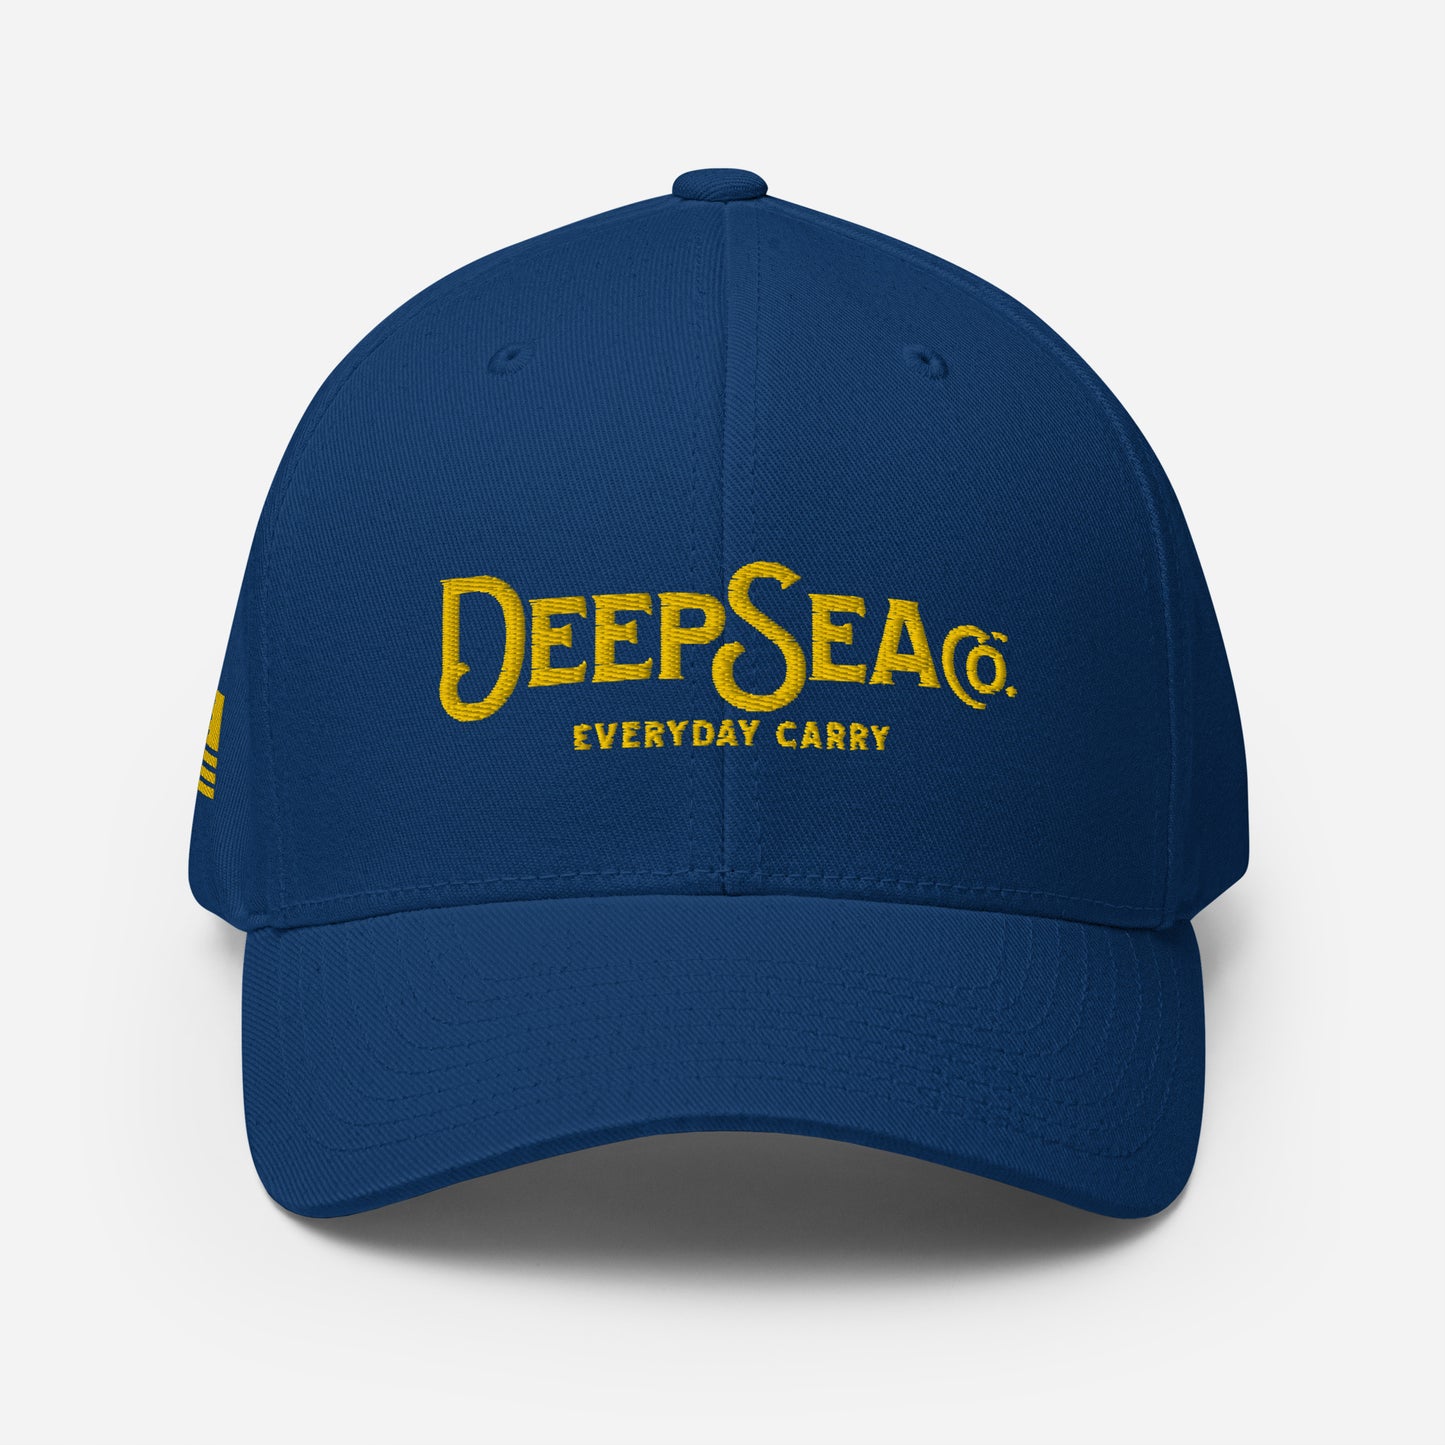 DeepSea EDC Official Camo Cap